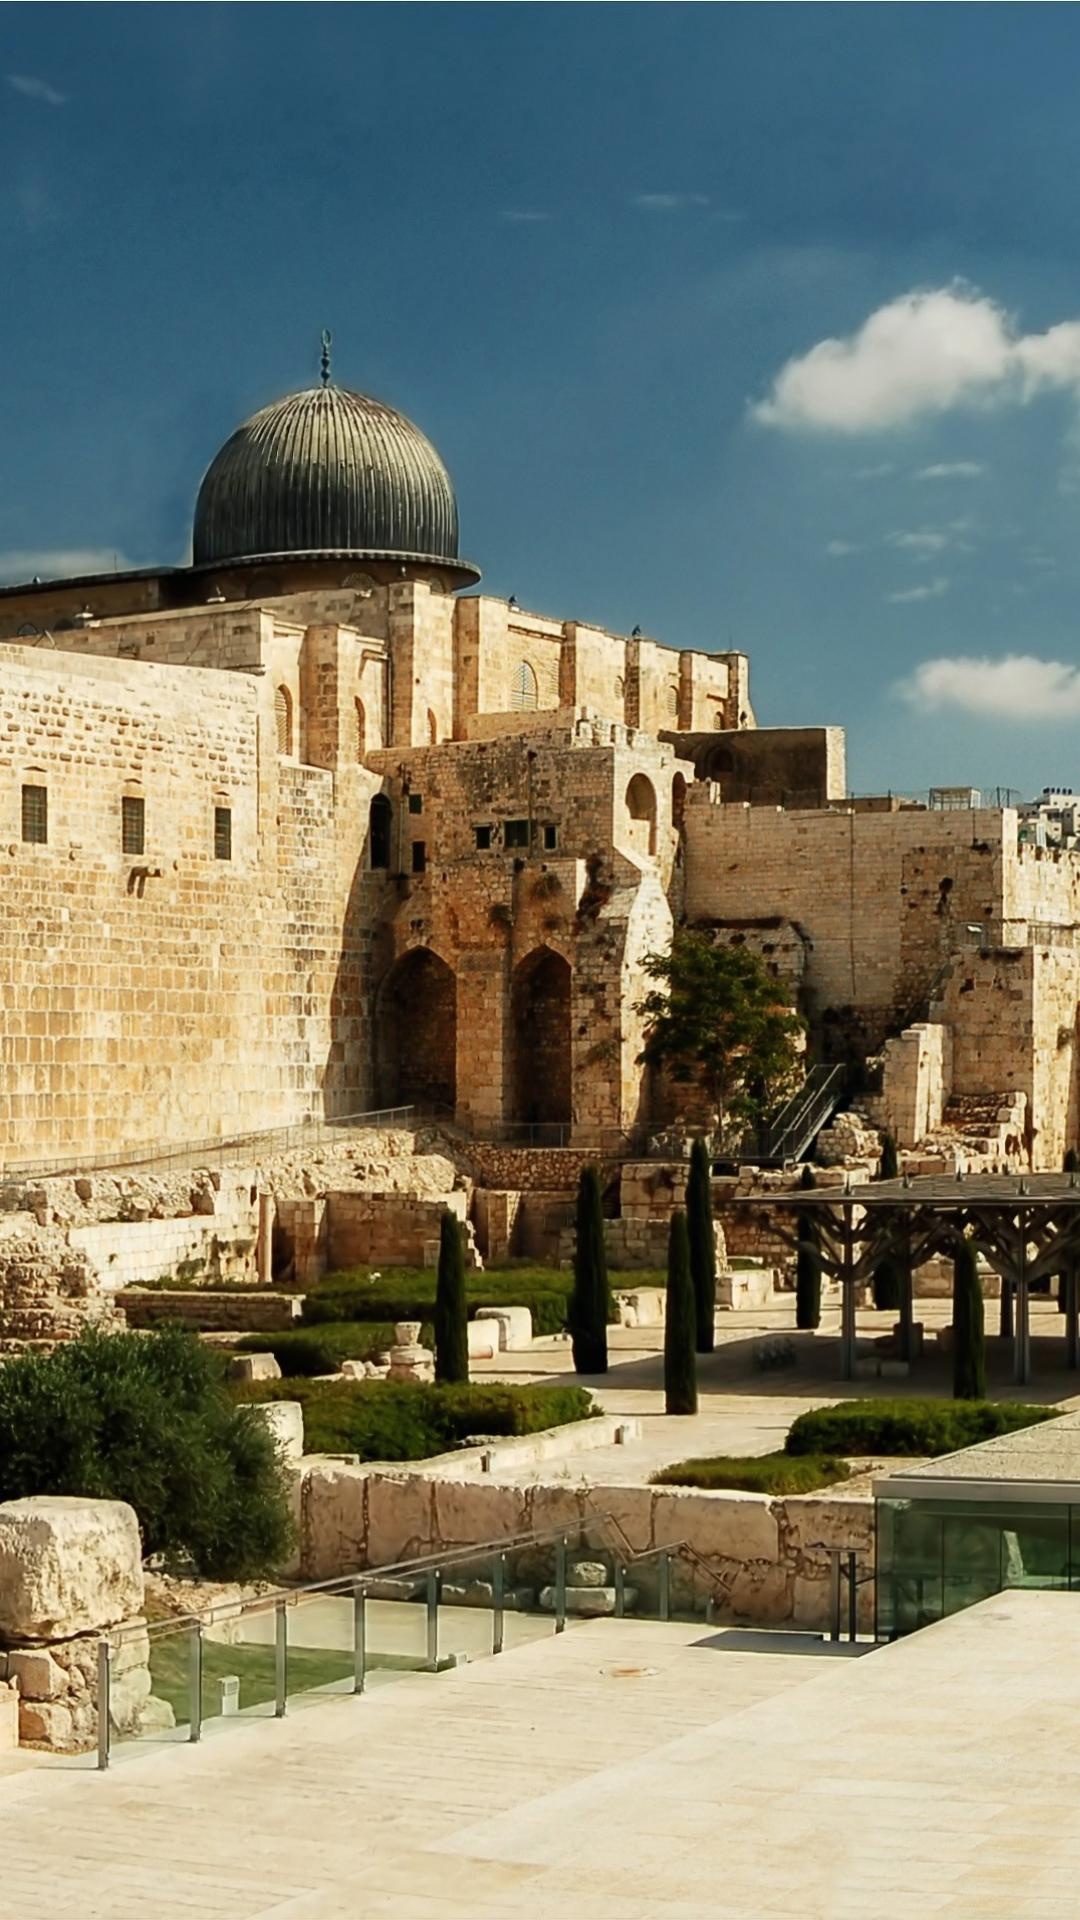 HD wallpaper, 1080X1920 Full Hd Phone, Mobile 1080P Jerusalem Background, Sacred Landmarks, Ancient History, Cultural Heritage, Jerusalem Travels